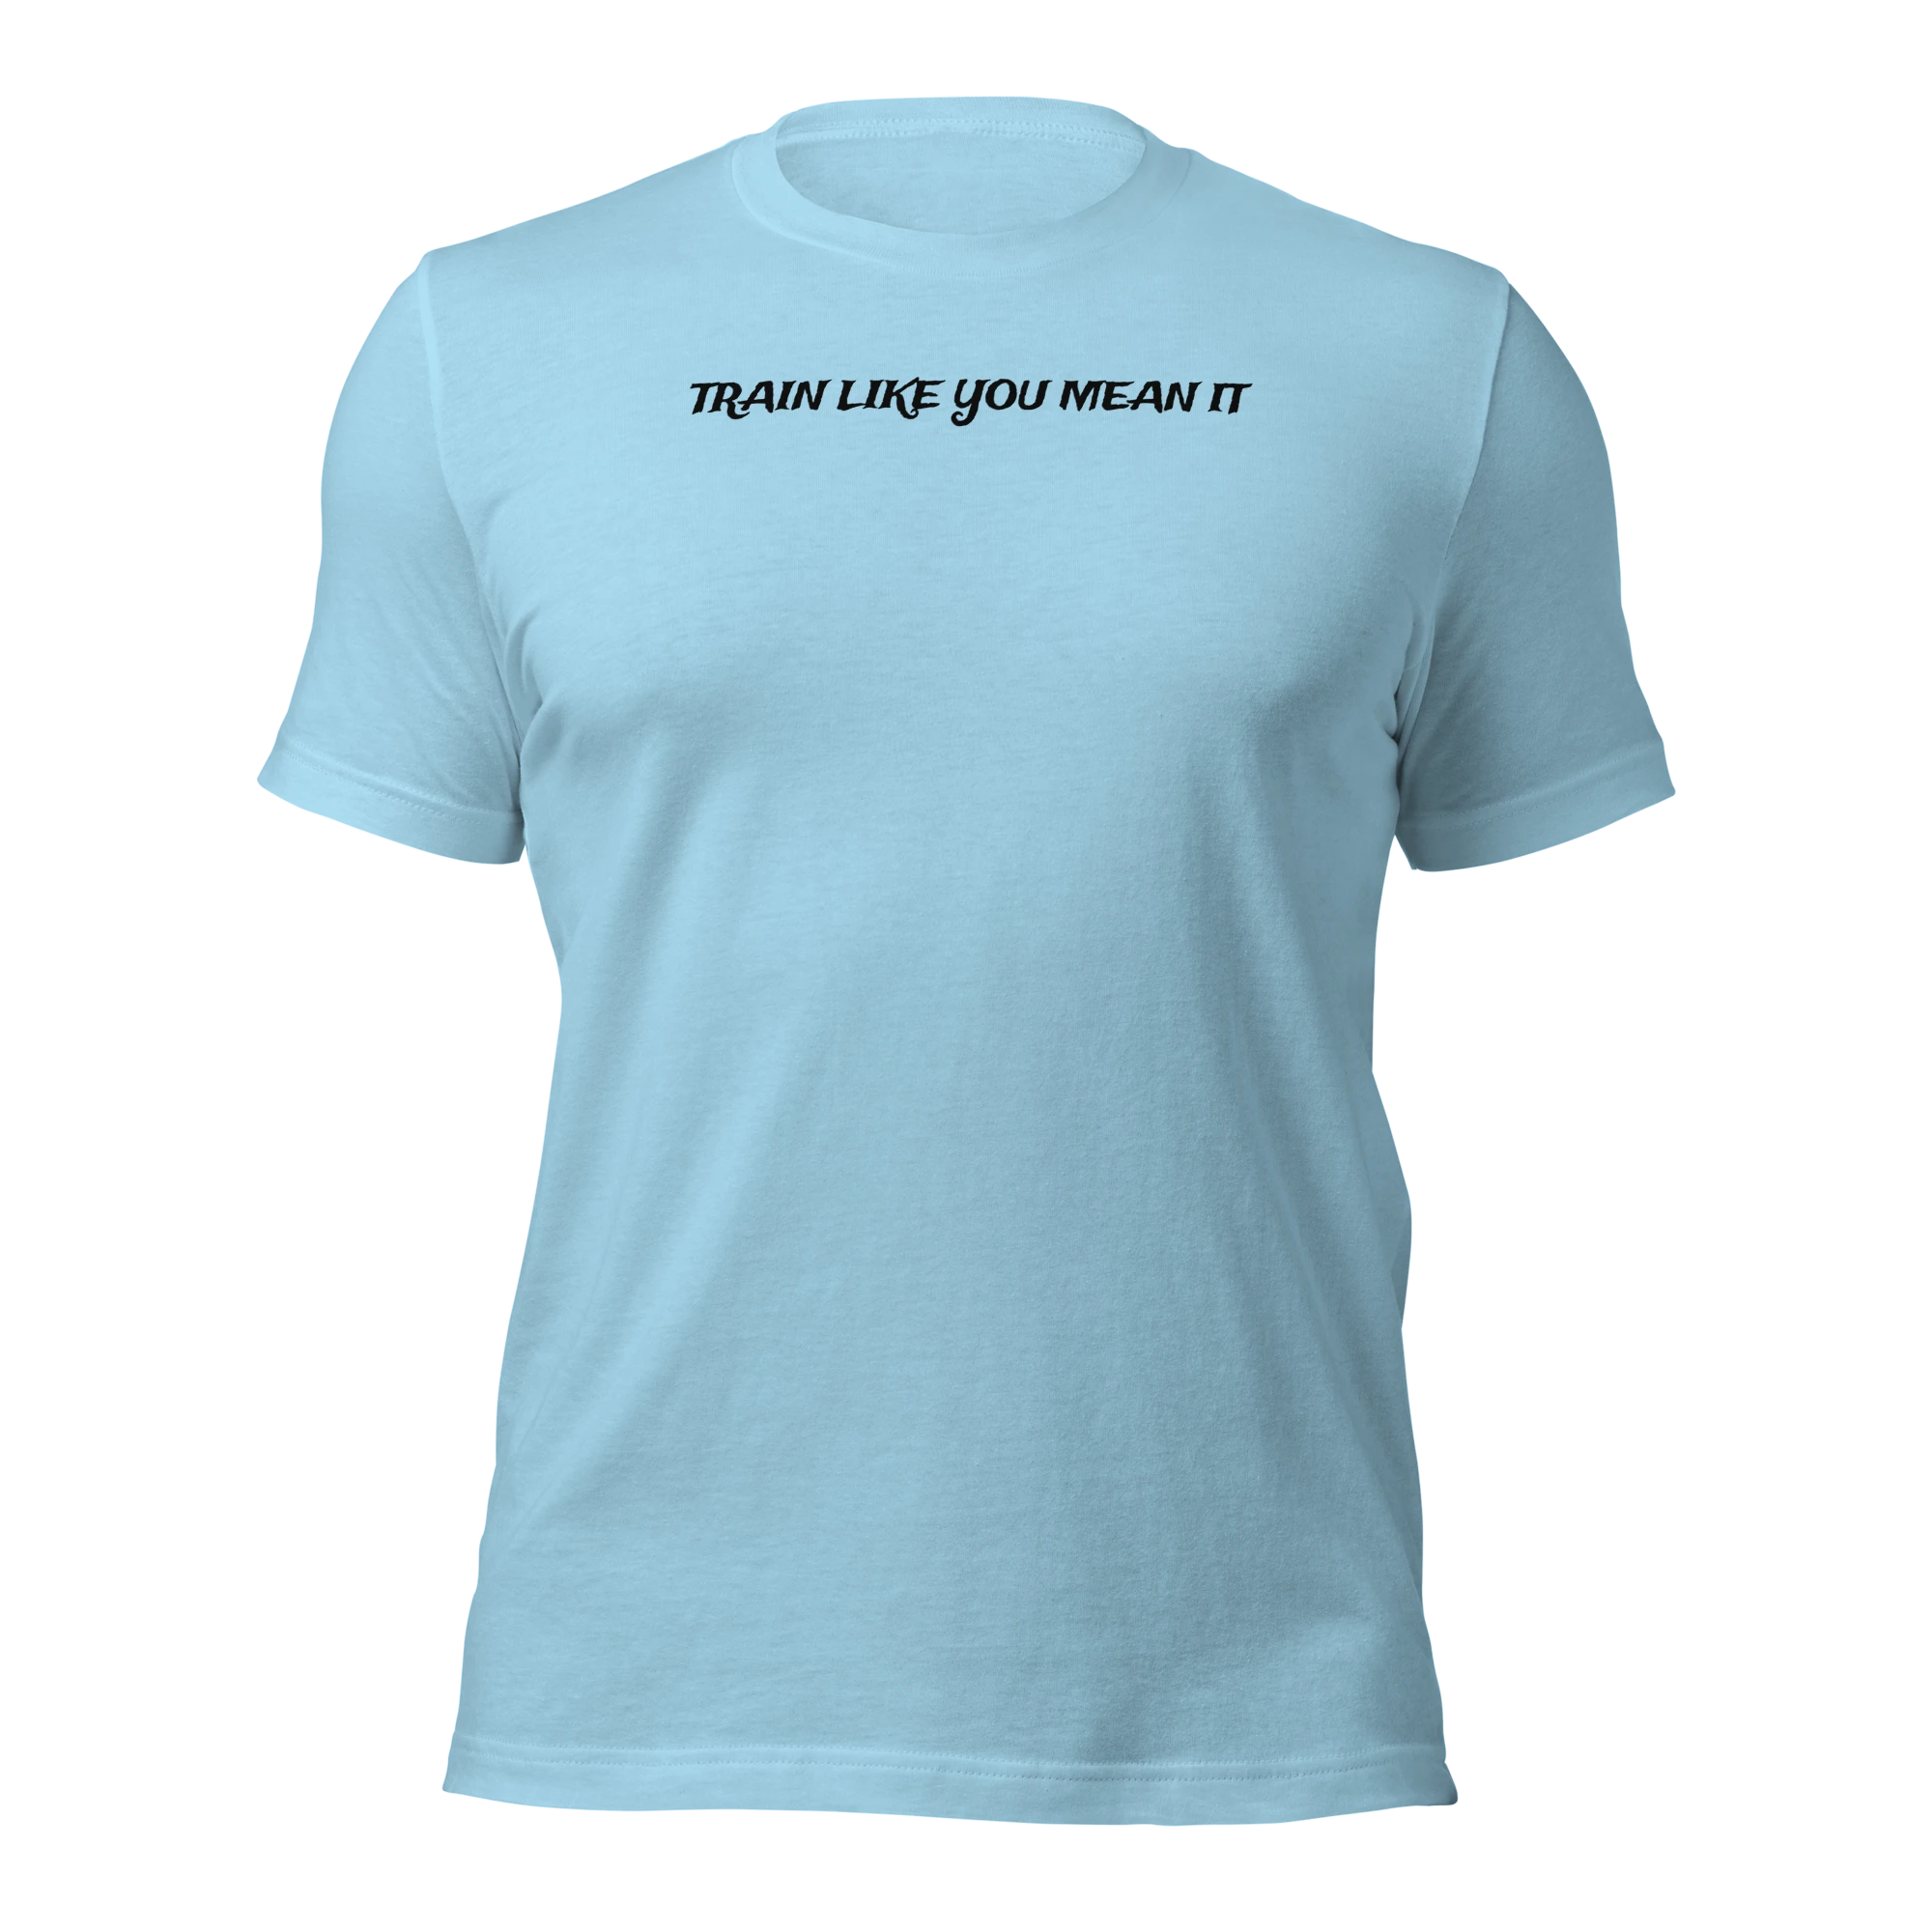 466-unisex-staple-t-shirt-ocean-blue-front-646194812f573-16843598823363.png